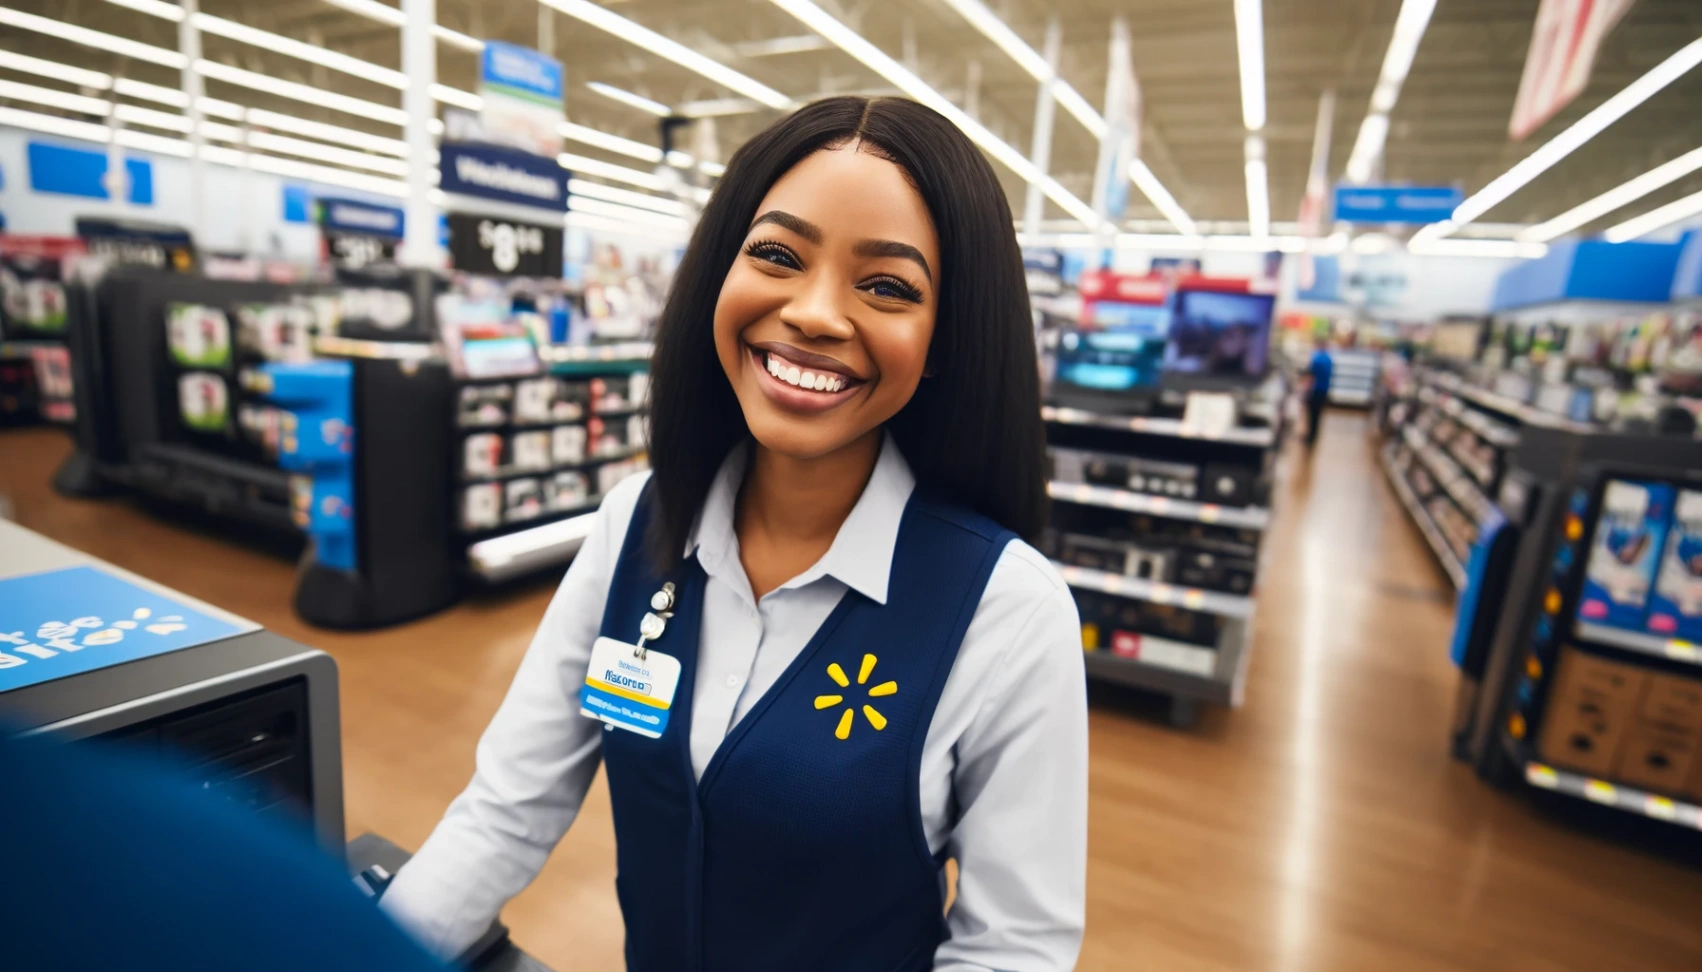 Walmart Karrier: Lépésről lépésre az Ön sikeres jelentkezéséig